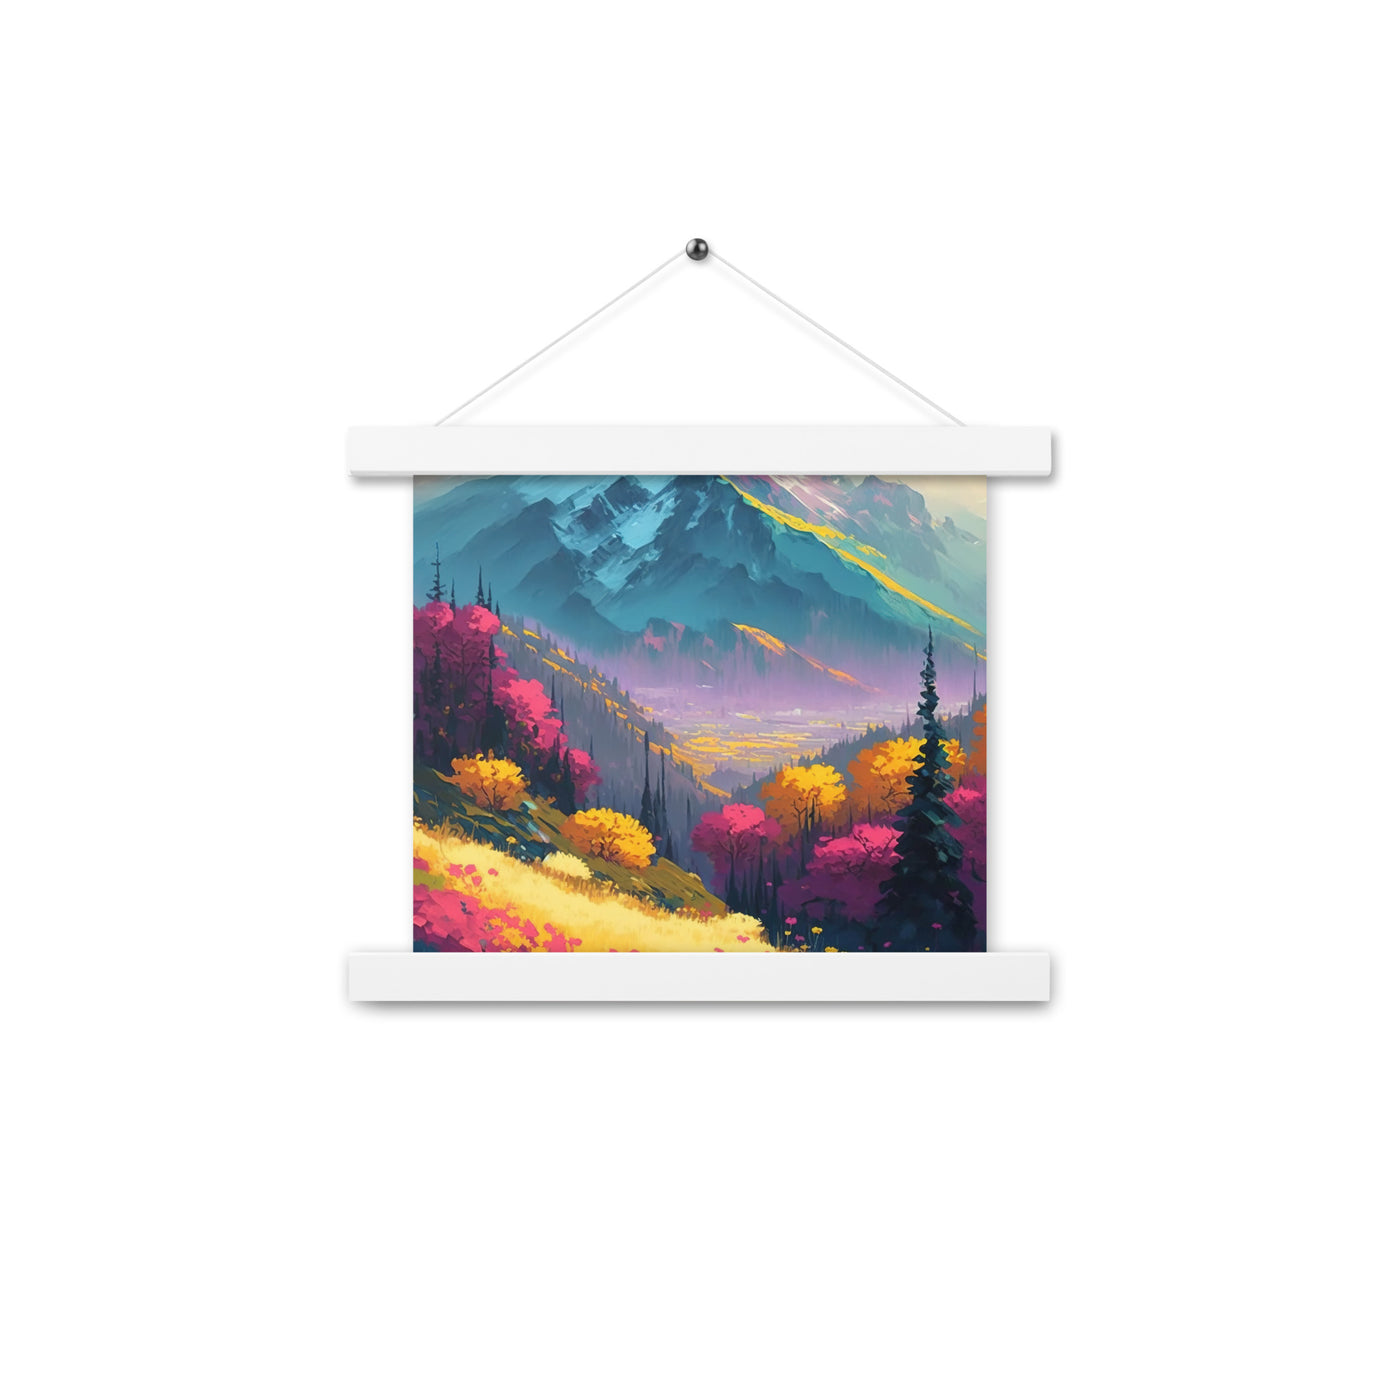 Berge, pinke und gelbe Bäume, sowie Blumen - Farbige Malerei - Premium Poster mit Aufhängung berge xxx 25.4 x 25.4 cm